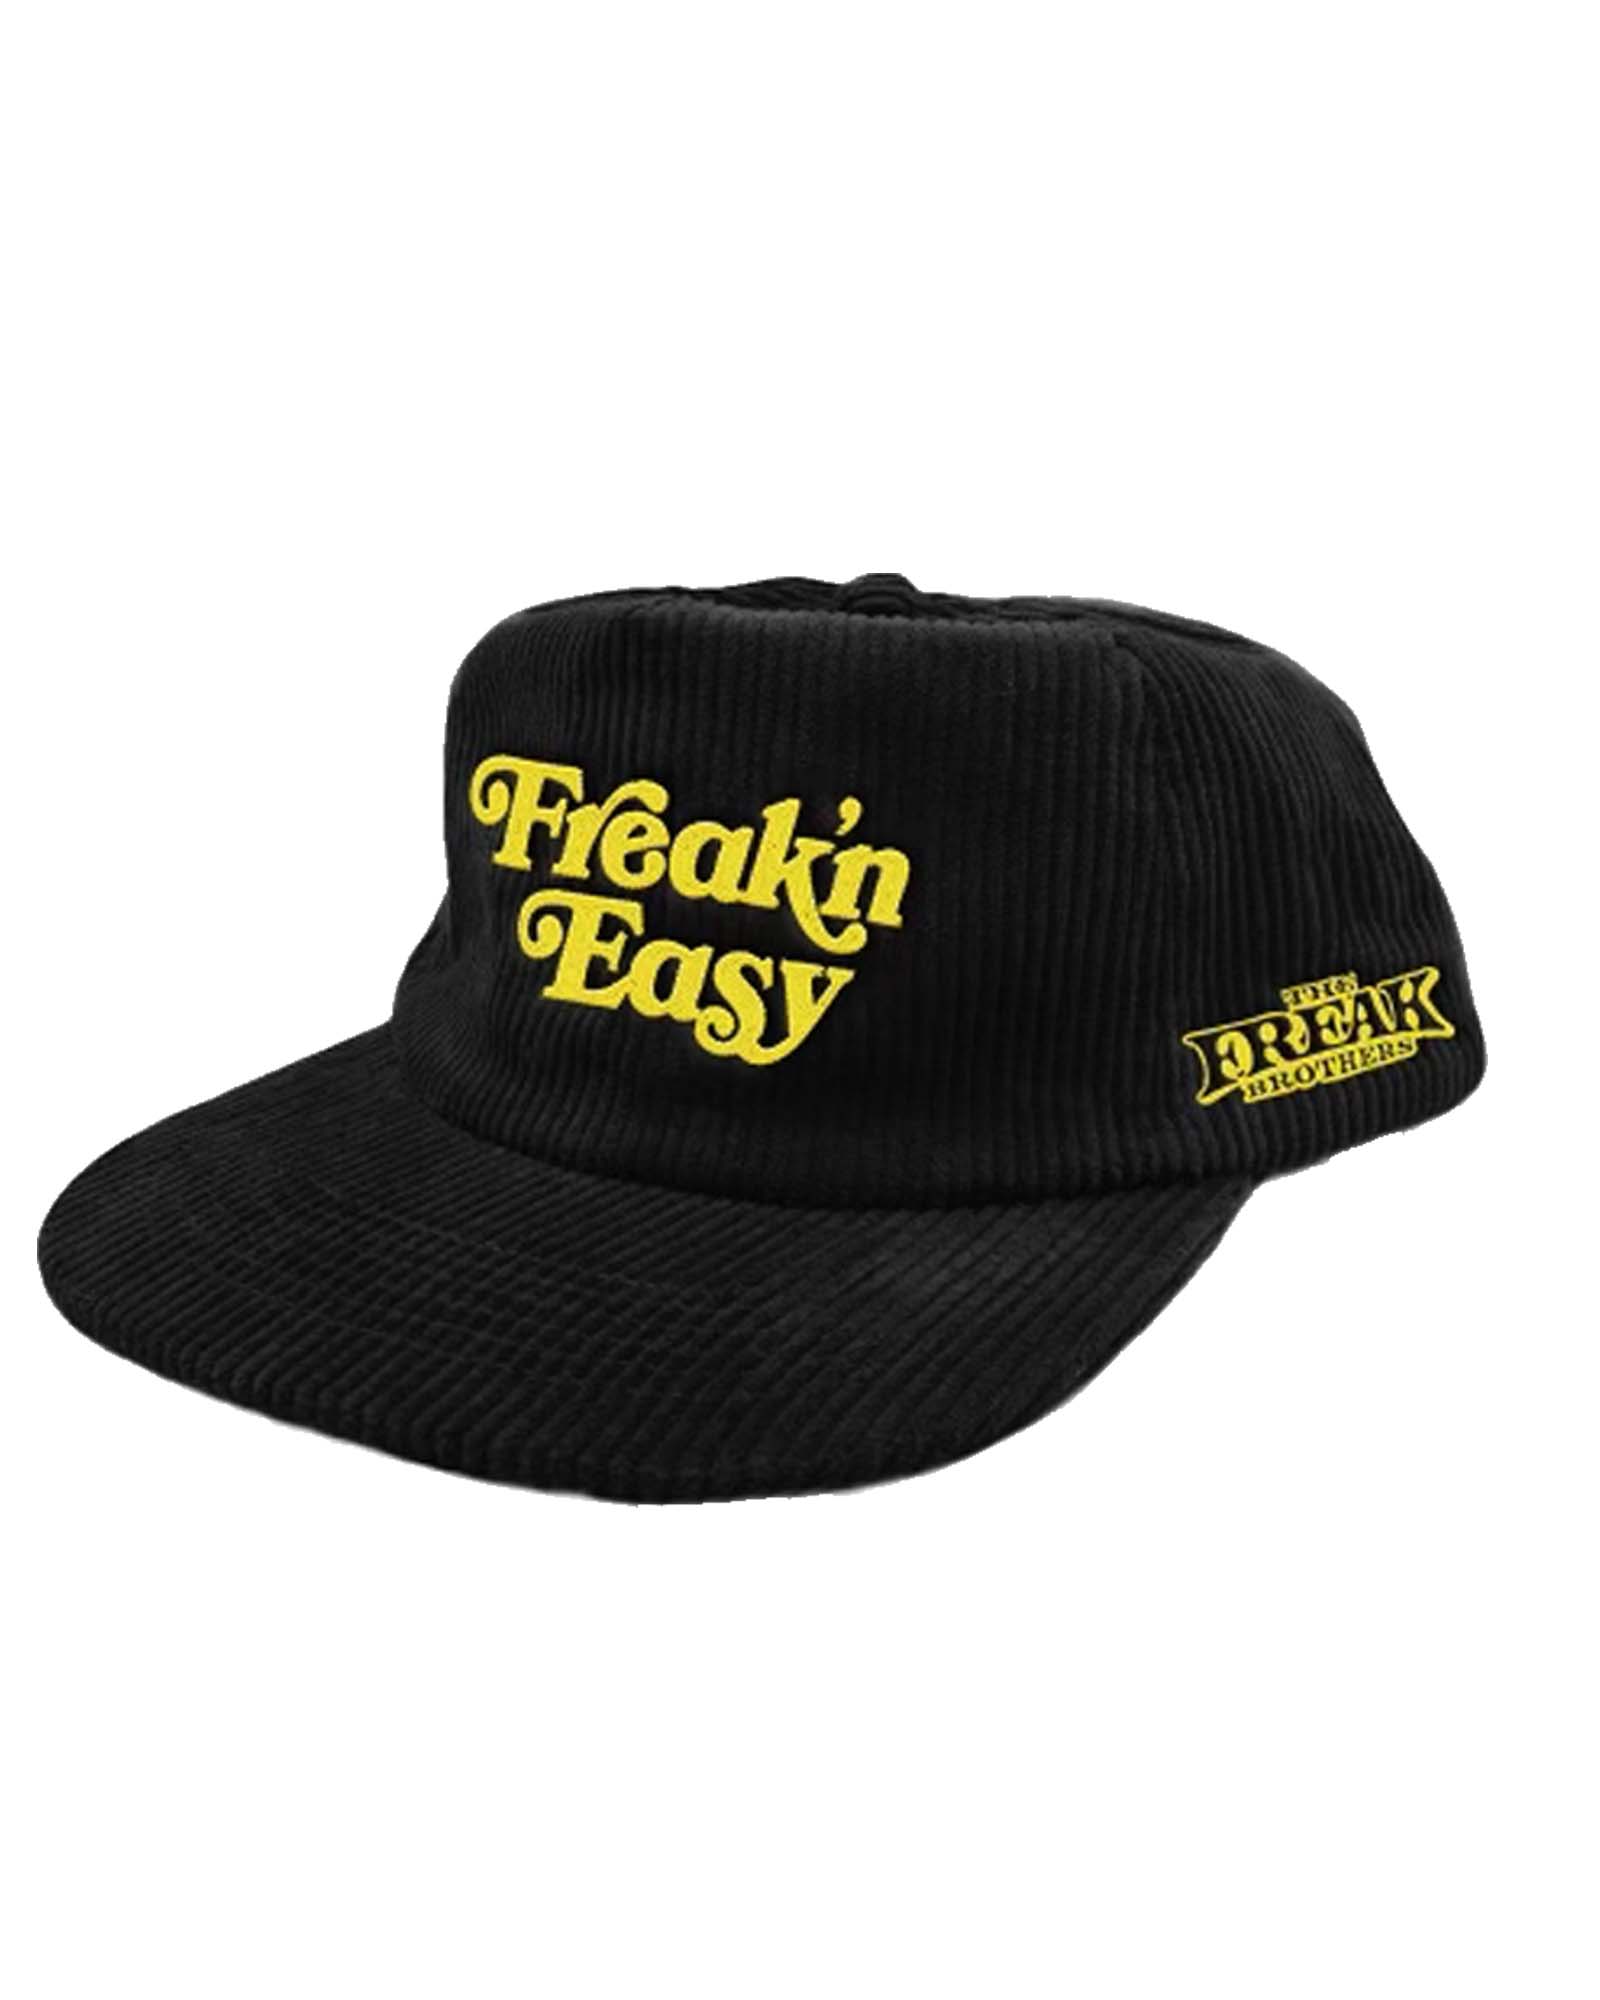 Freak\'n Easy Snapback Hat – The Freak Brothers | Snapback Caps